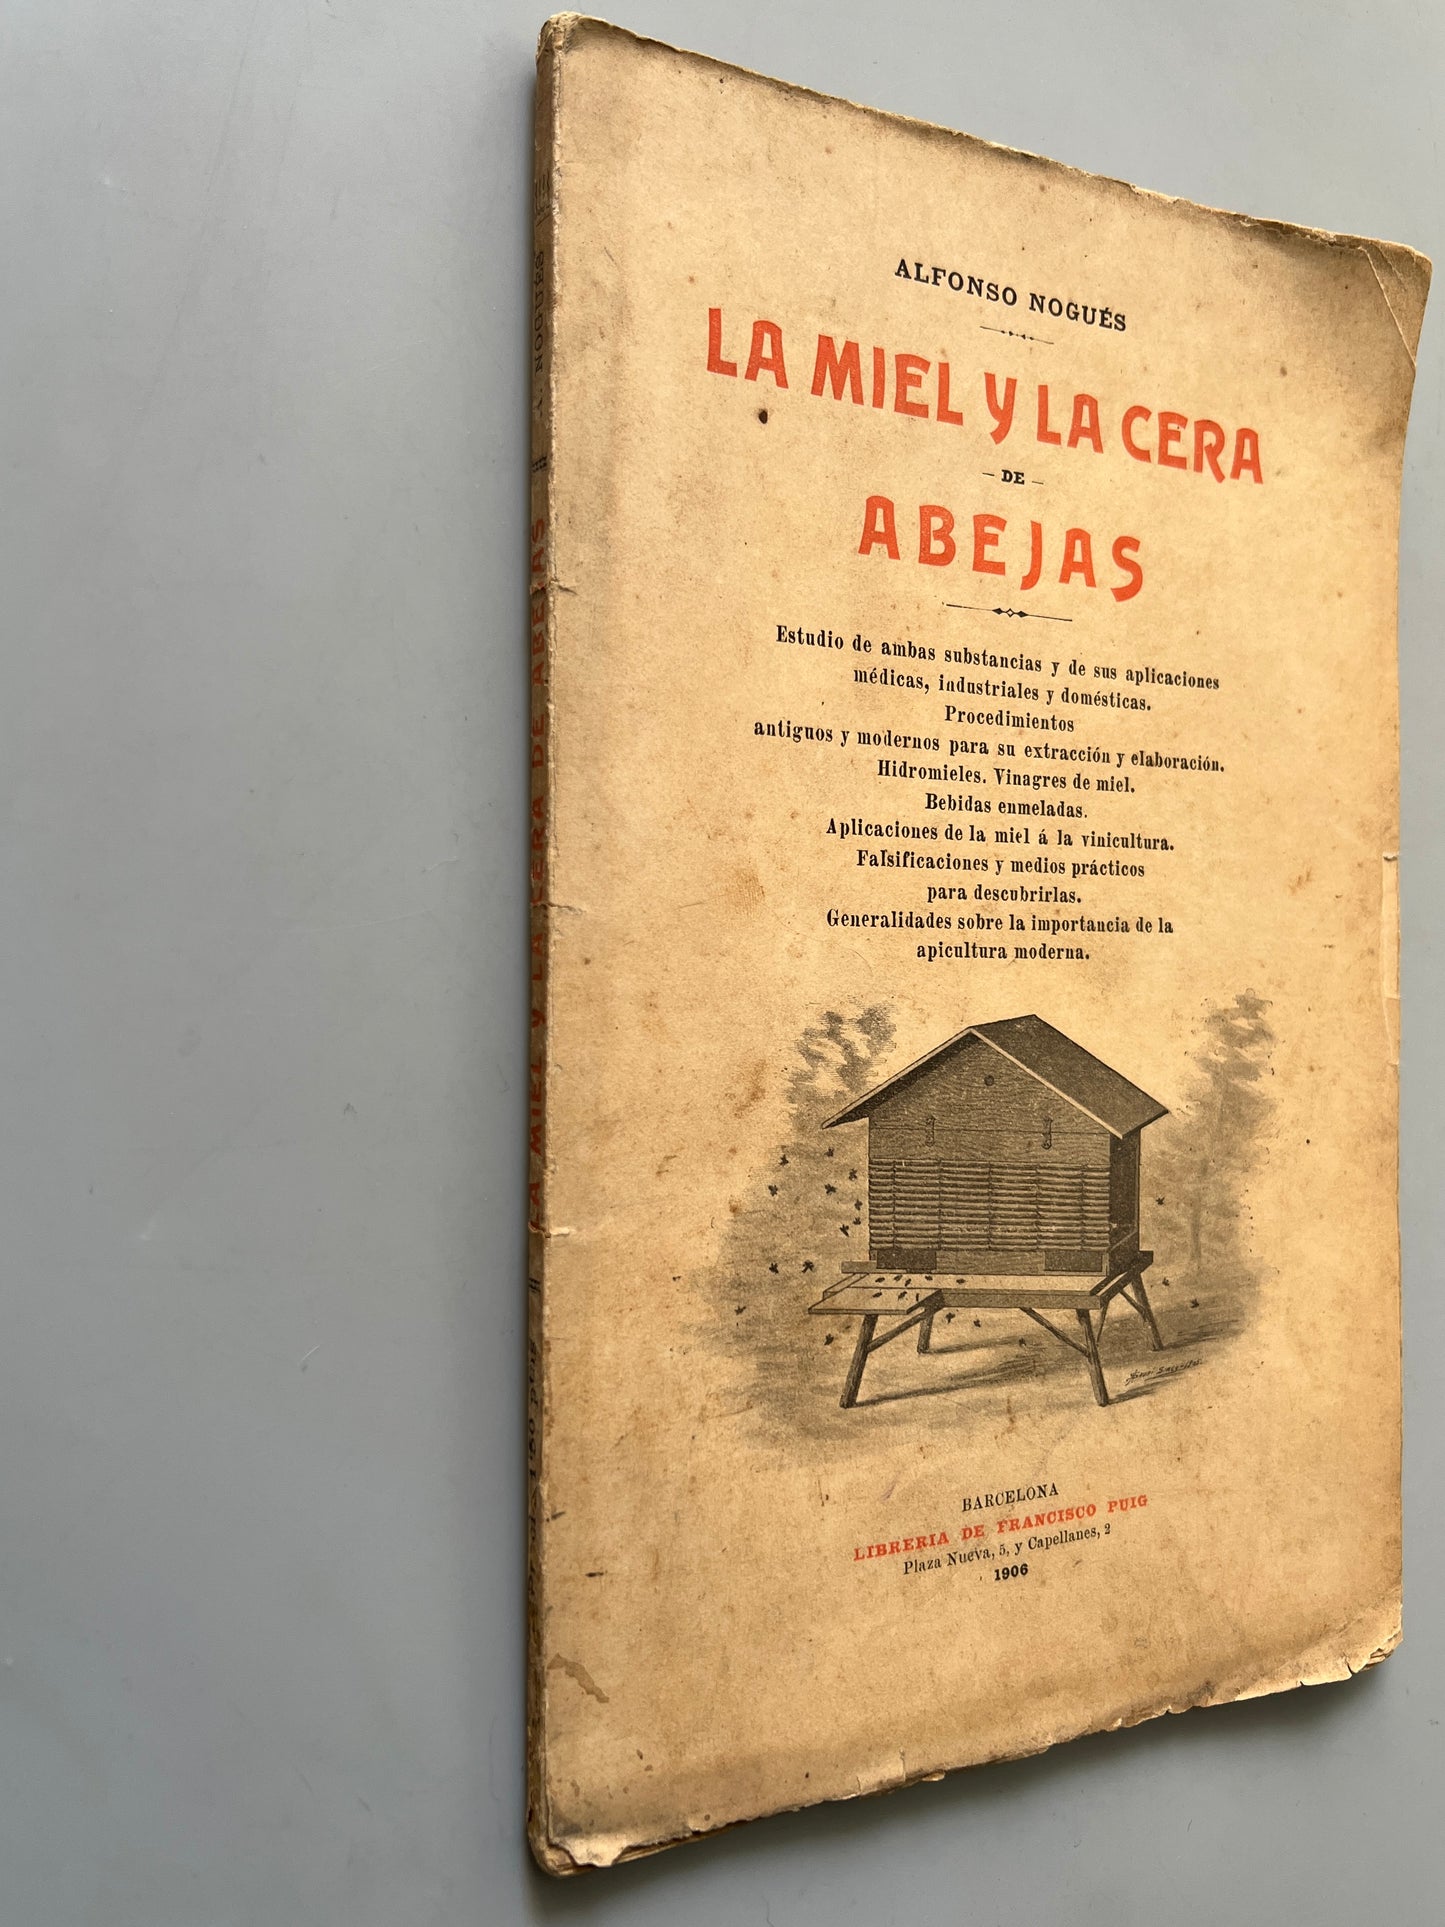 La miel y la cera de abejas, Alfonso Nogués - Librería de Francisco Puig, 1906